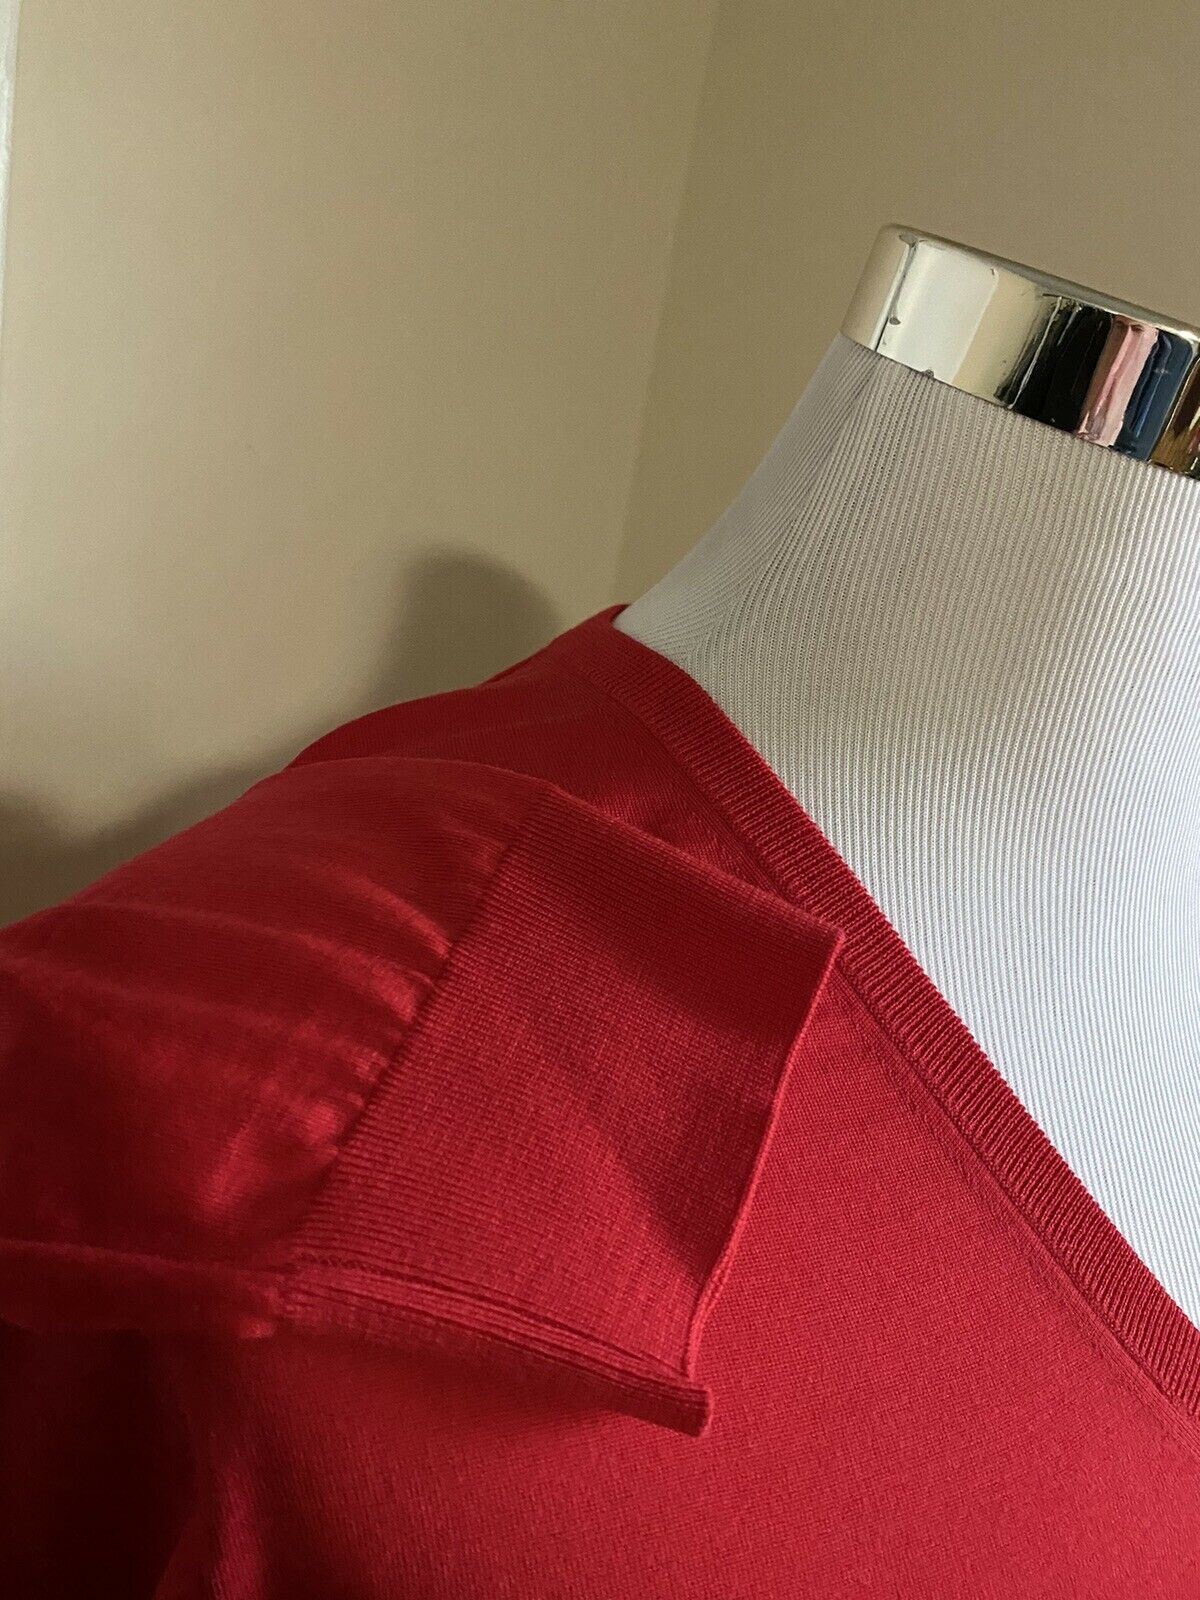 СЗТ $1200 Gucci Мужской шерстяной свитер с V-образным вырезом Красный Размер L Италия